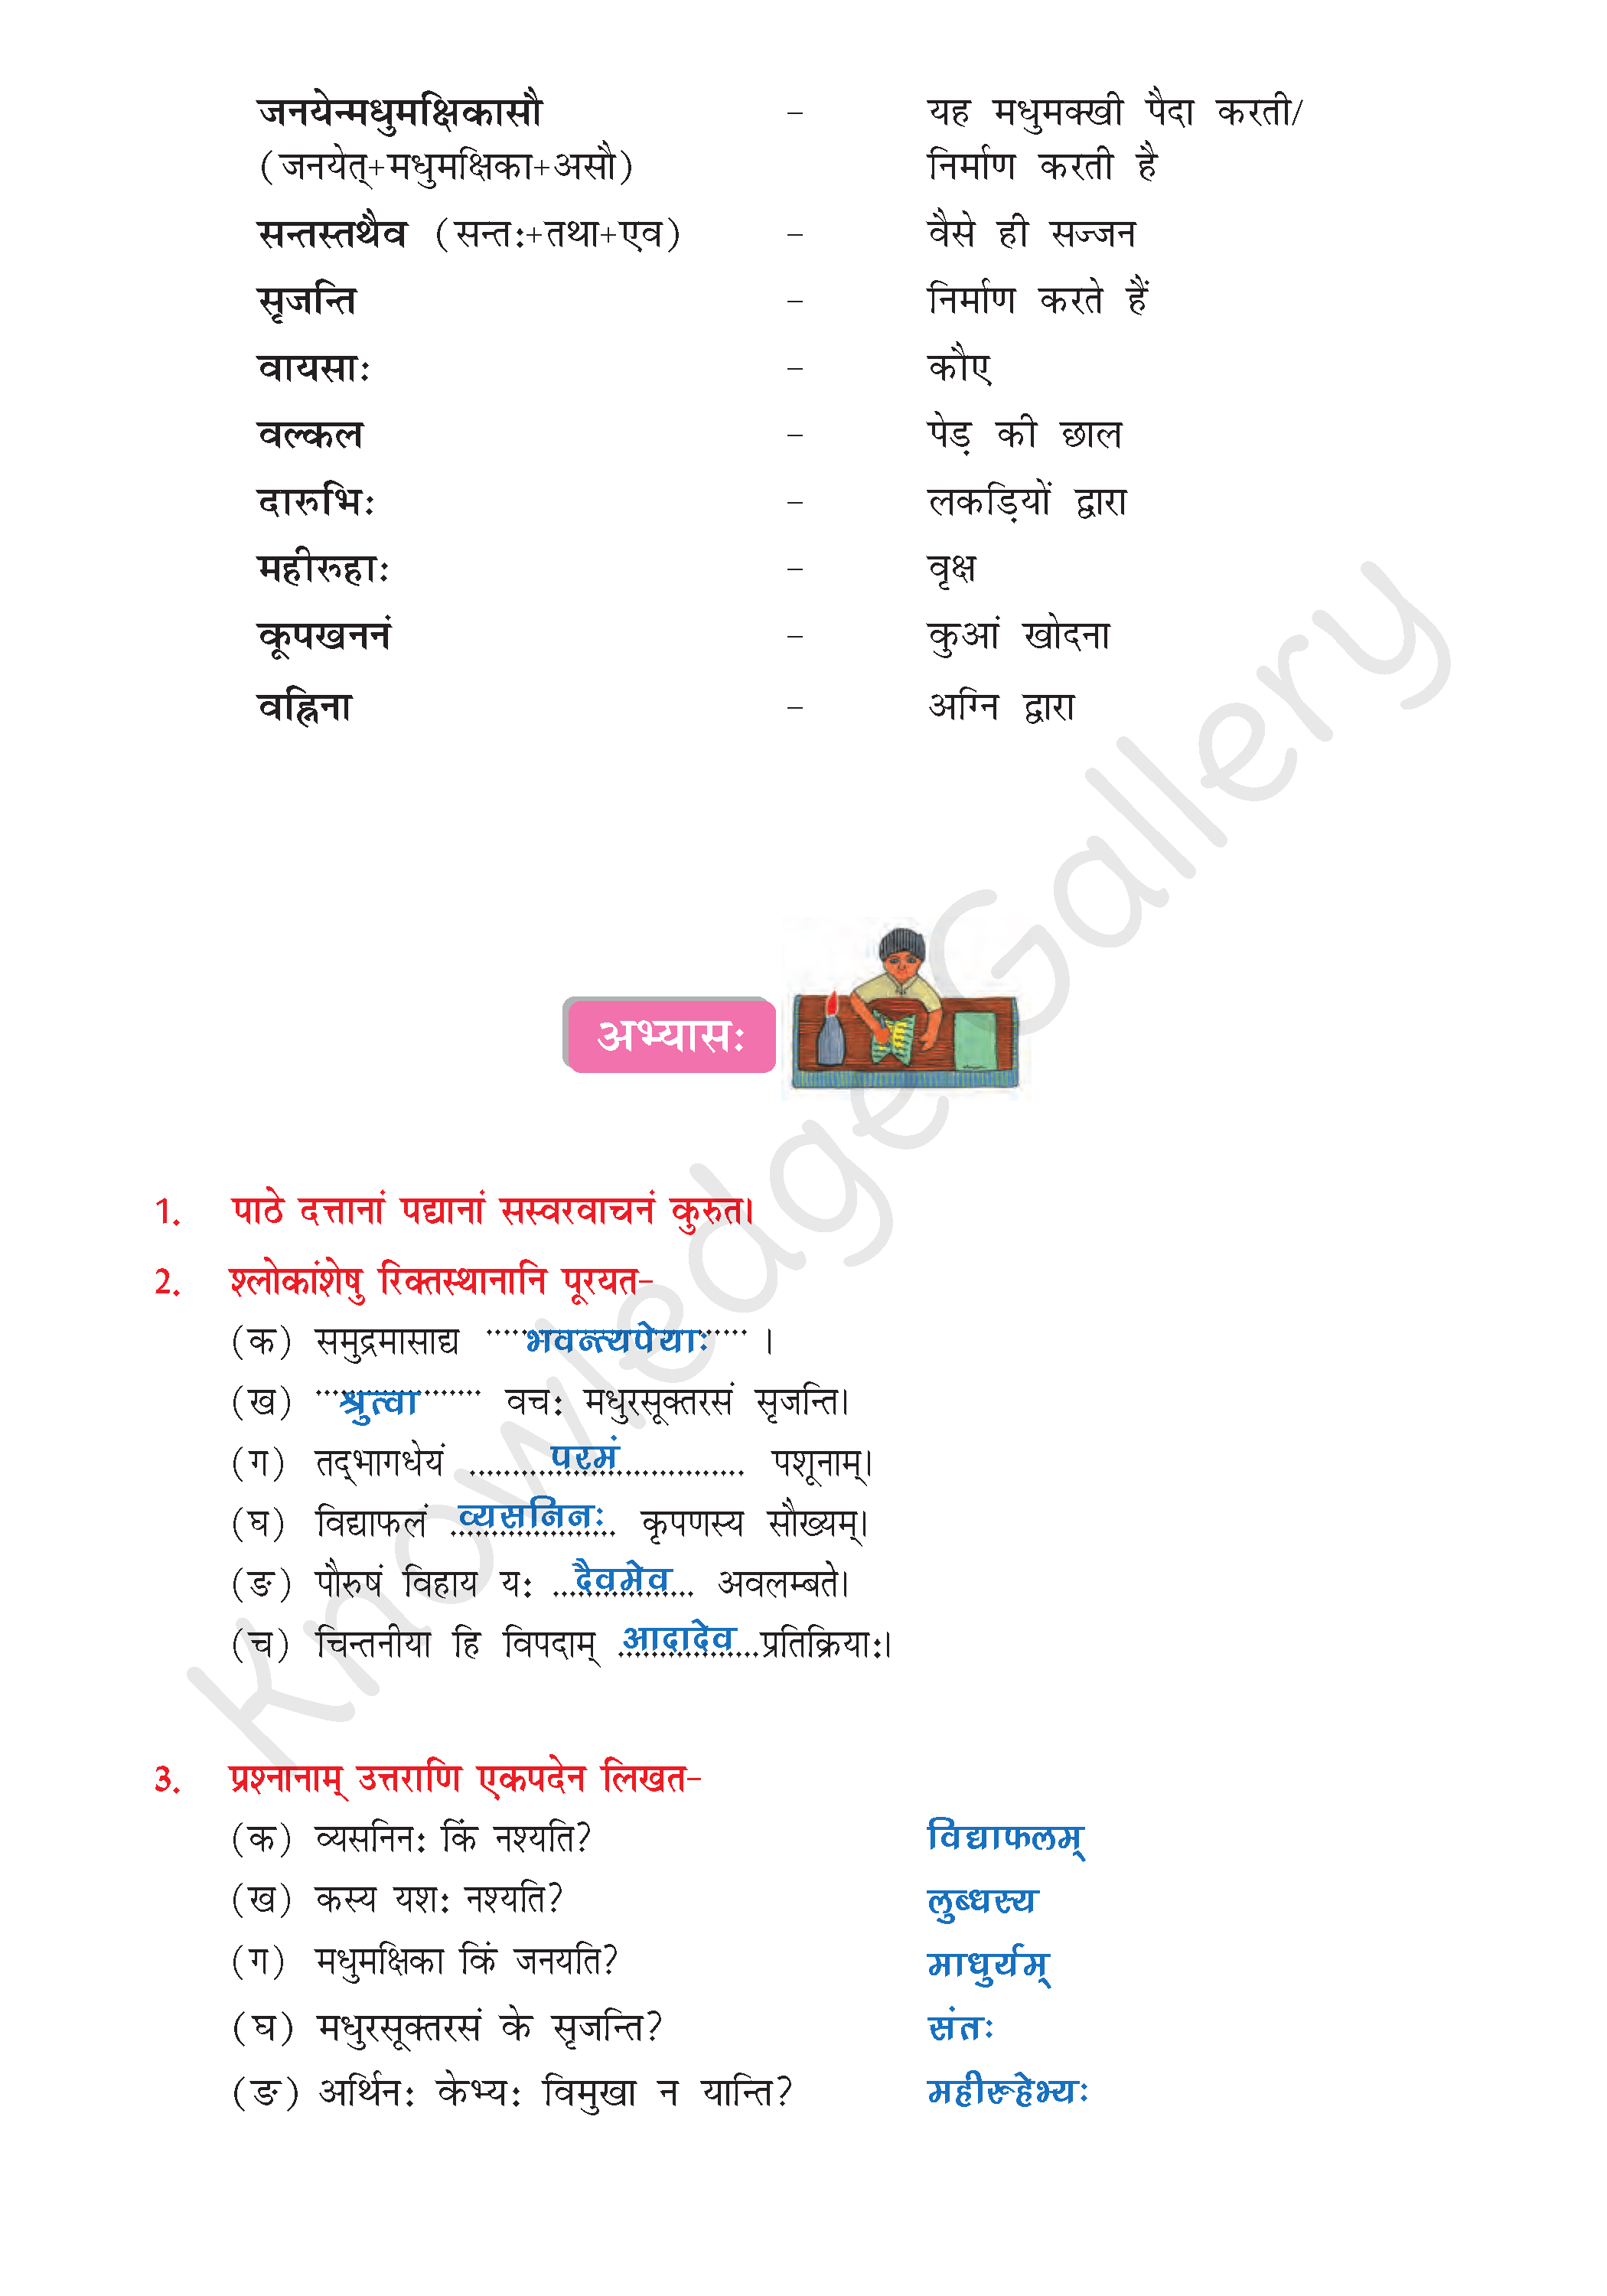 NCERT Solution For Class 8 Sanskrit Chapter 1 part 4